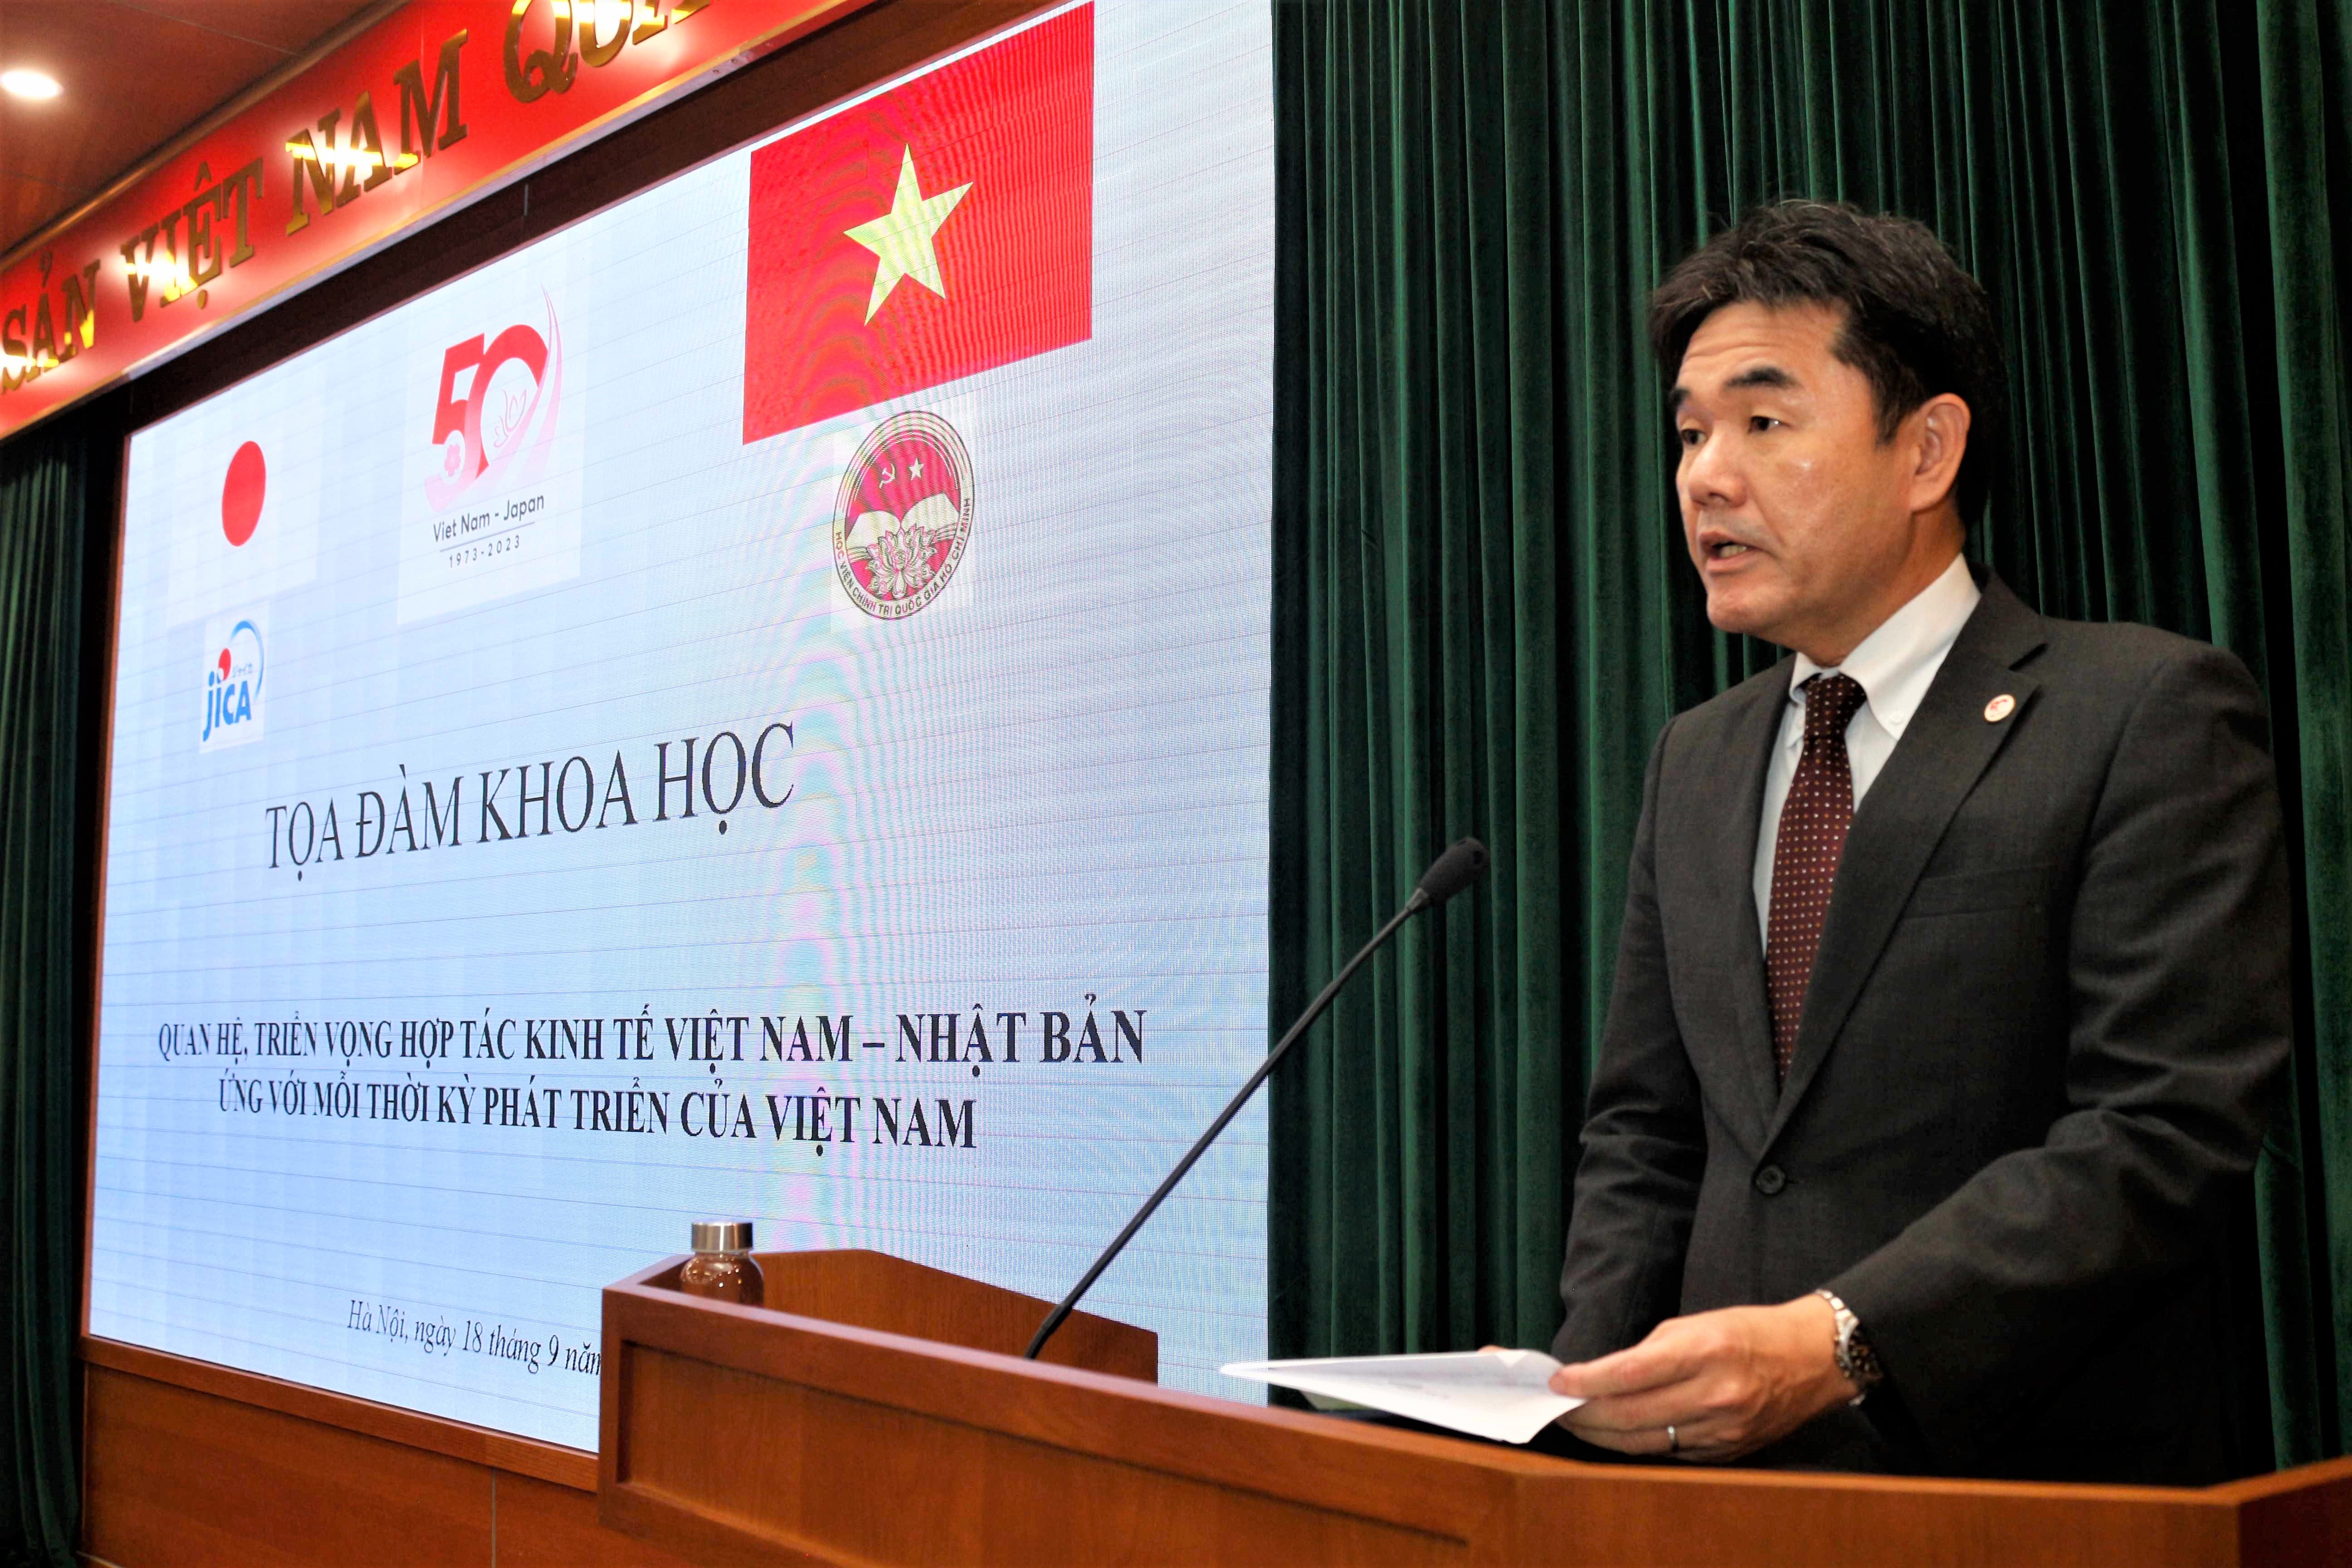 Tọa đàm triển vọng hợp tác kinh tế Việt Nam - Nhật Bản